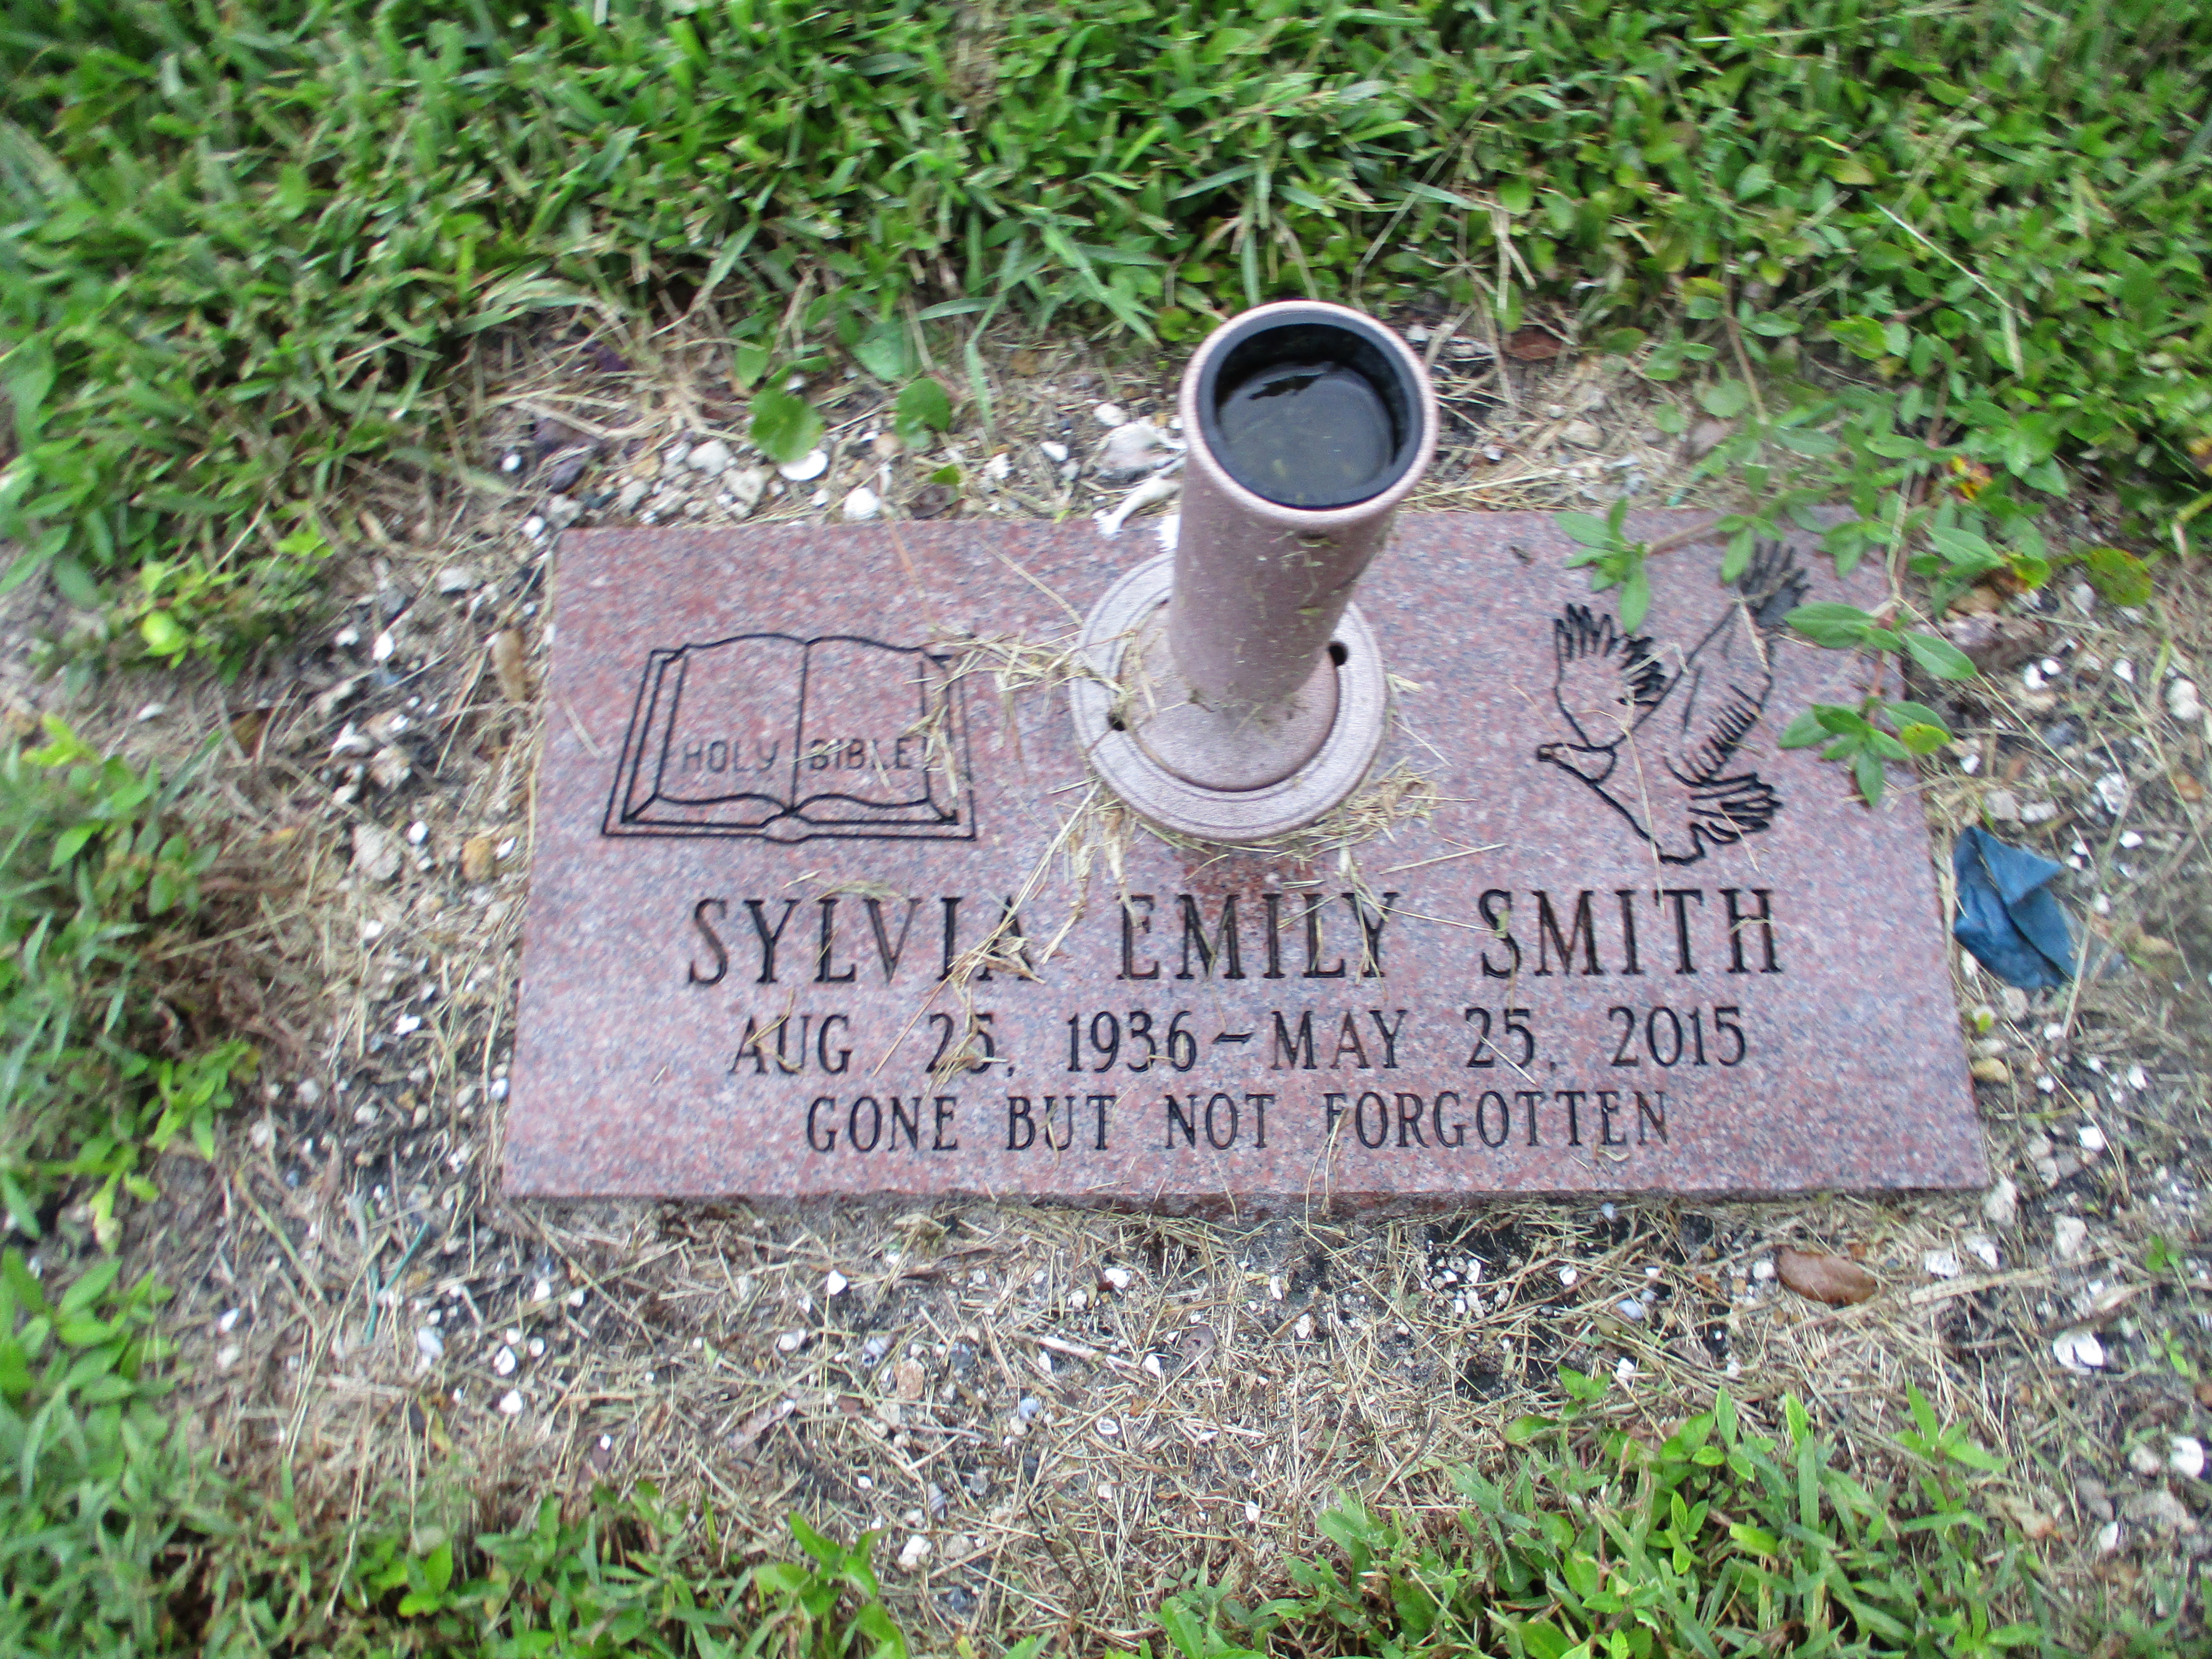 Sylvia Emily Smith